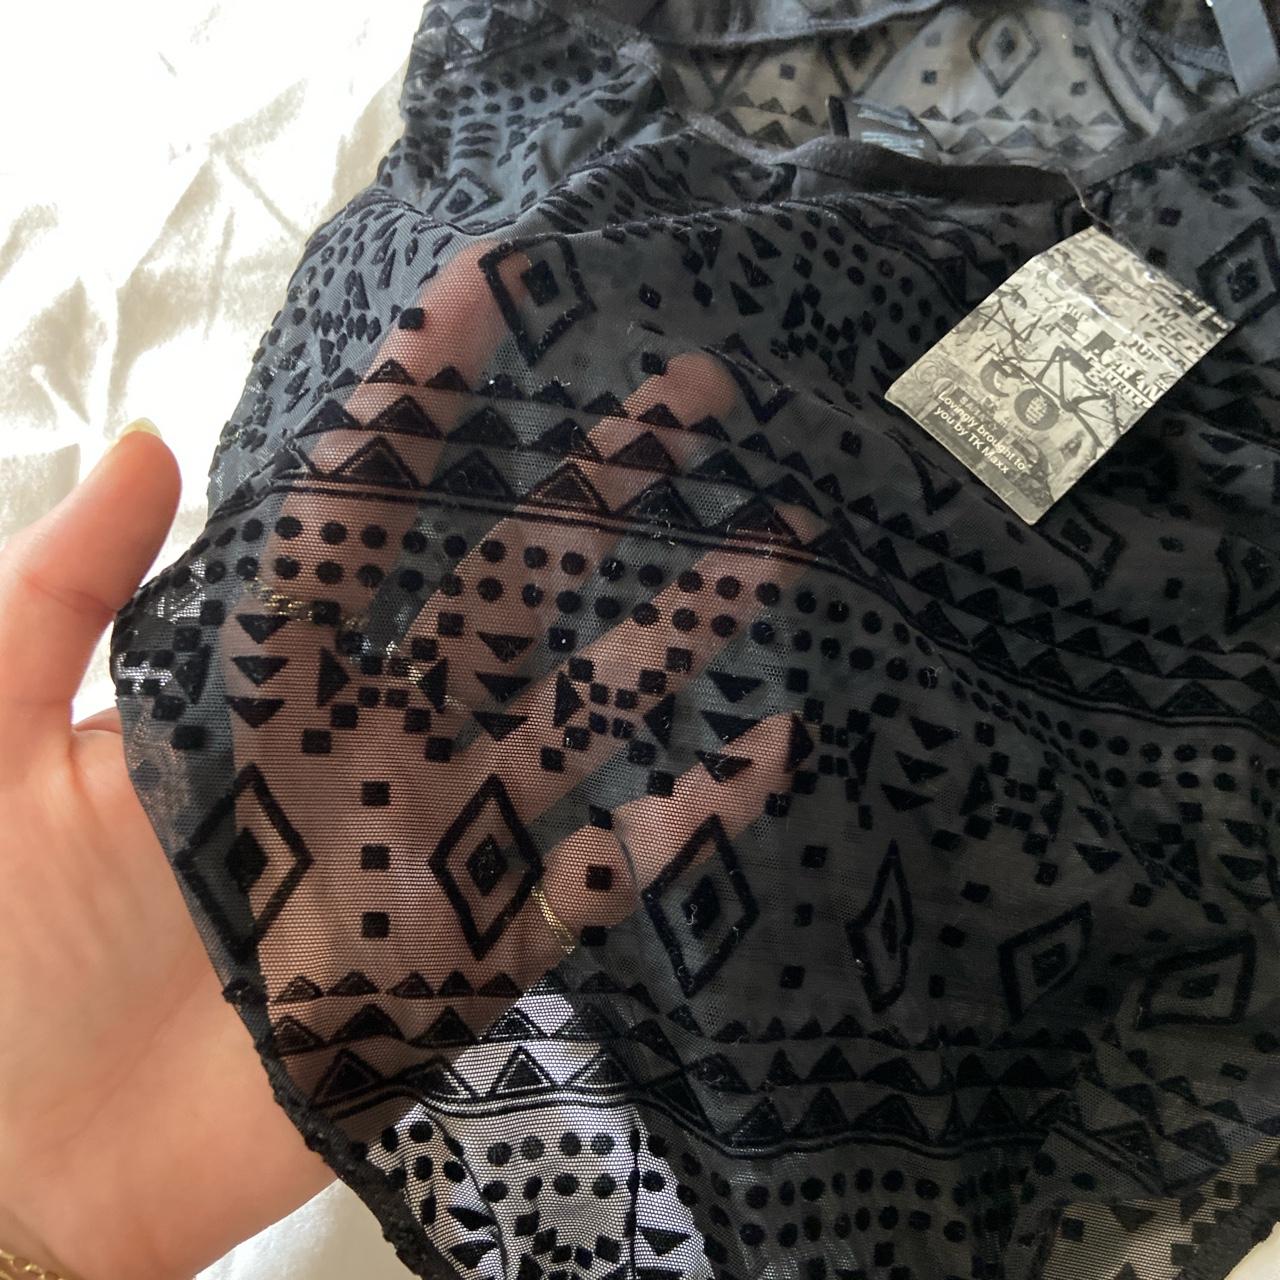 Black sheer mesh bodysuit with velvet Aztec - Depop